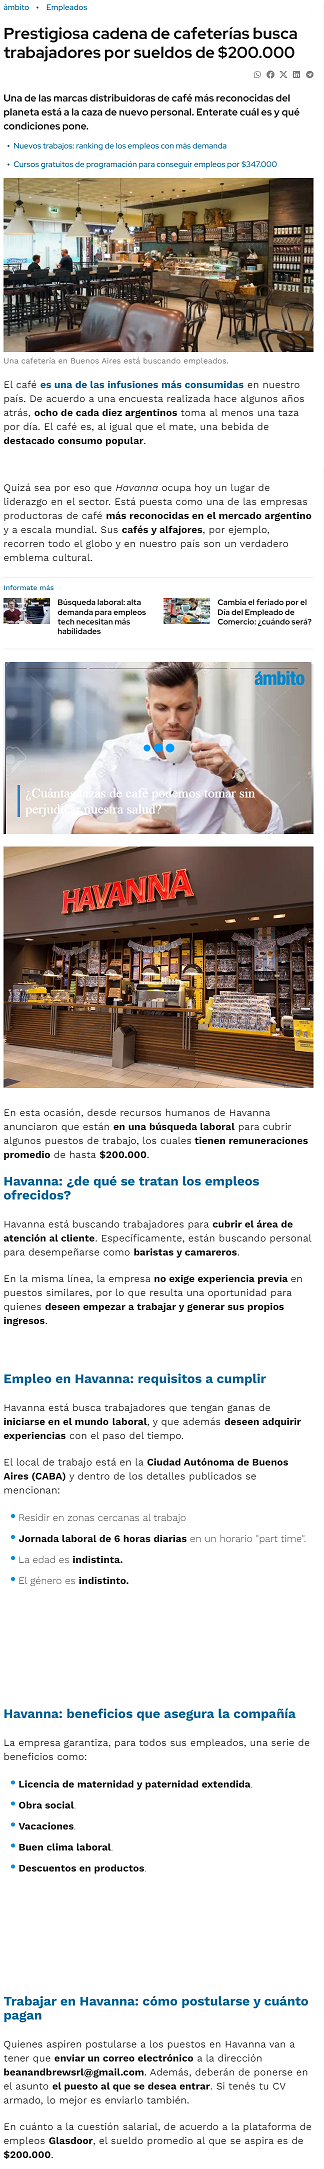 Atenti-Prestigiosa cadena de cafeterías busca trabajadores -.png